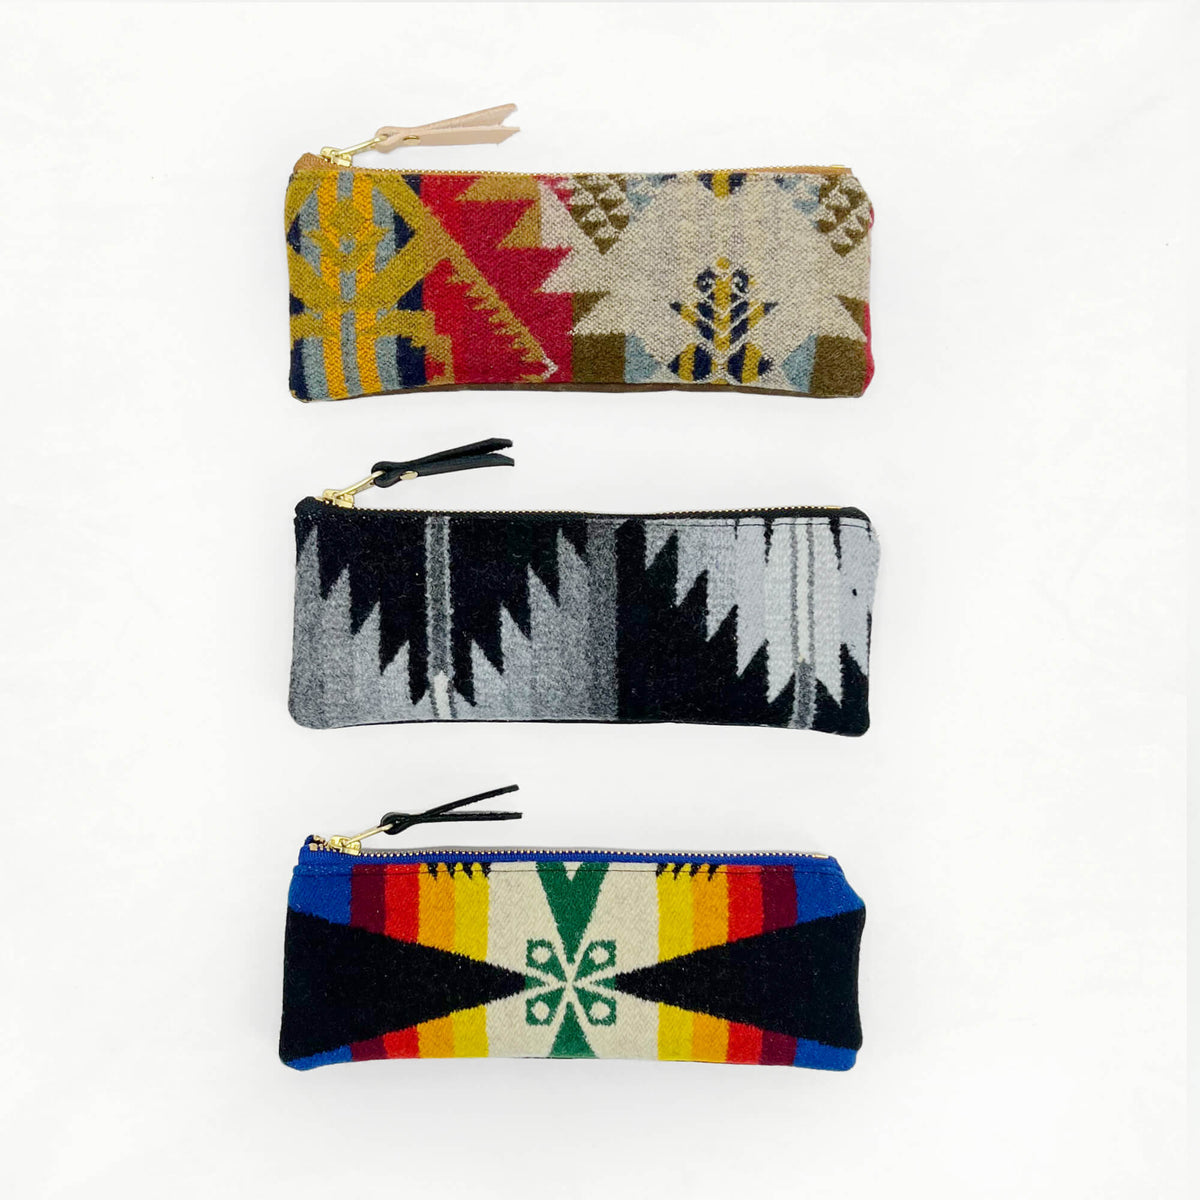 Zipper Pouch Kits with Pendleton® Wool - Grab Bag!